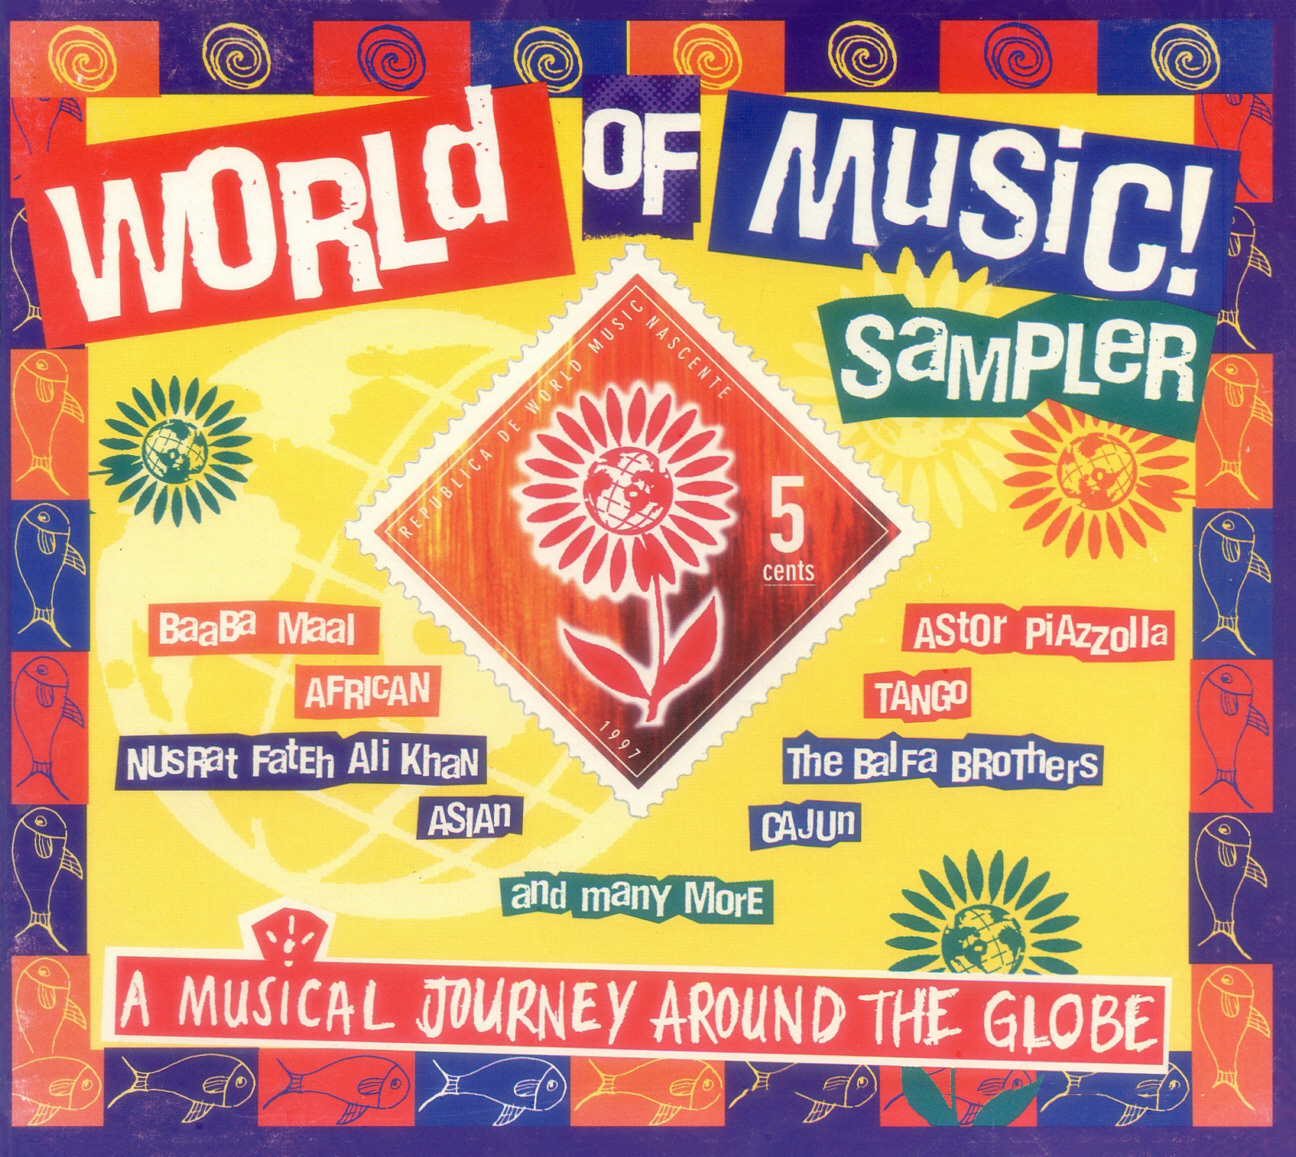 WORLD OF MUSIC SAMPLER cover art